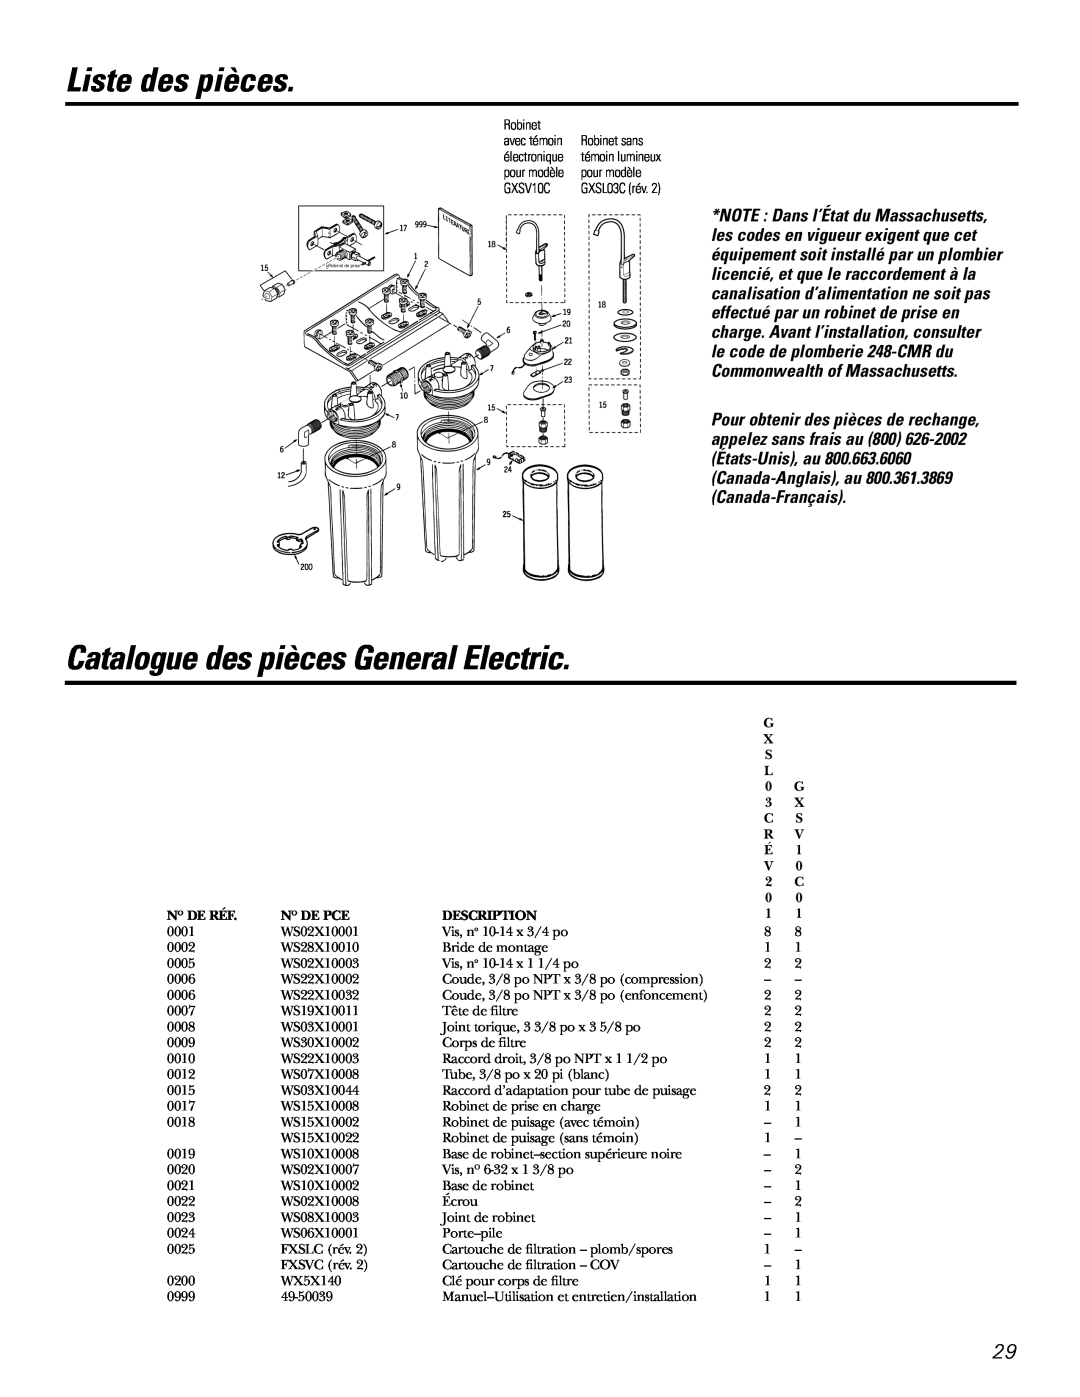 GE GXSV10C, GXSL03C Liste des pièces, Catalogue des pièces General Electric, N O De Réf, N O De Pce, Description 